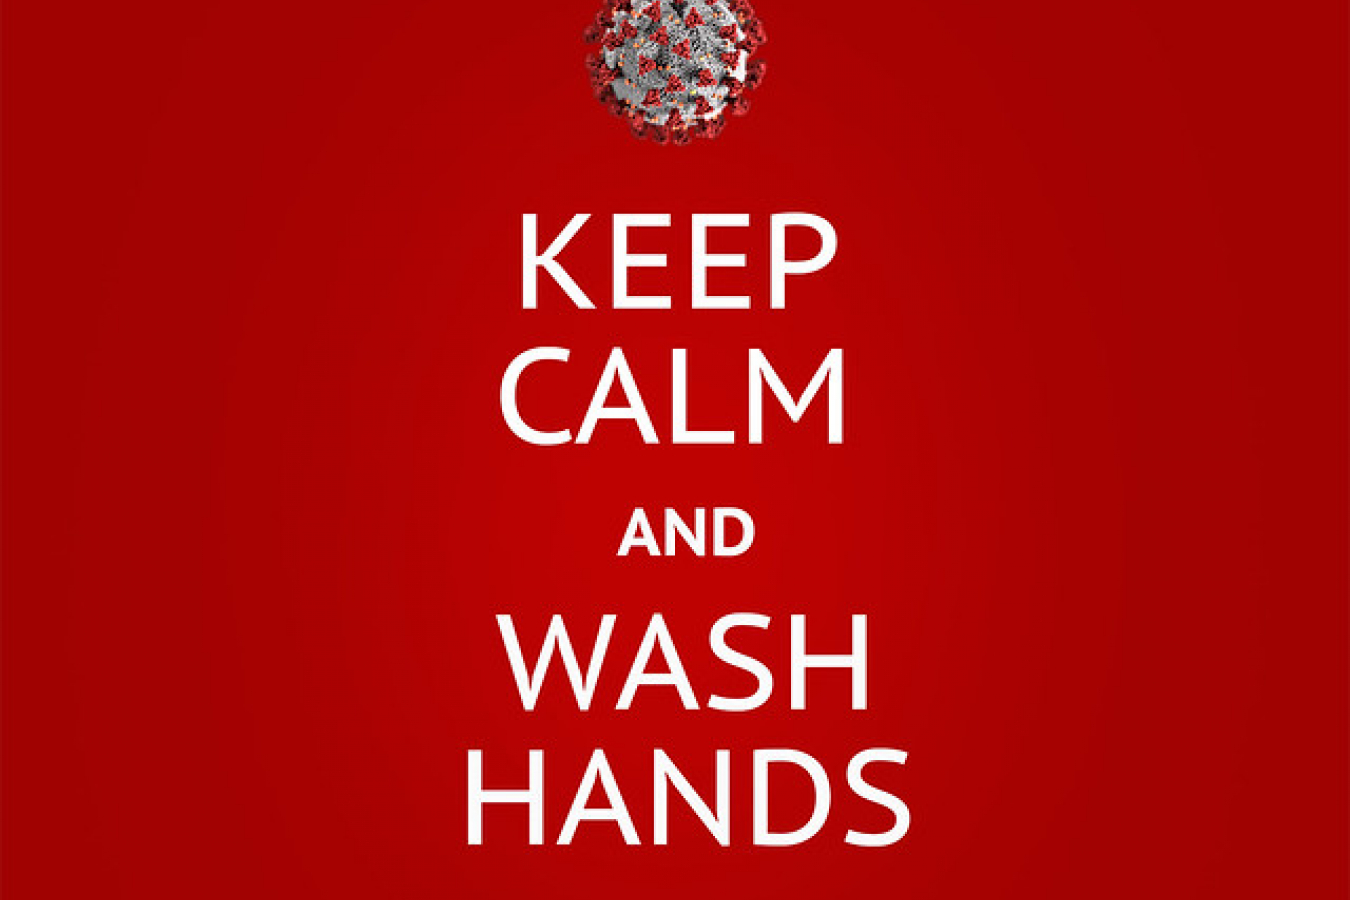 Coronavirus - wash hands